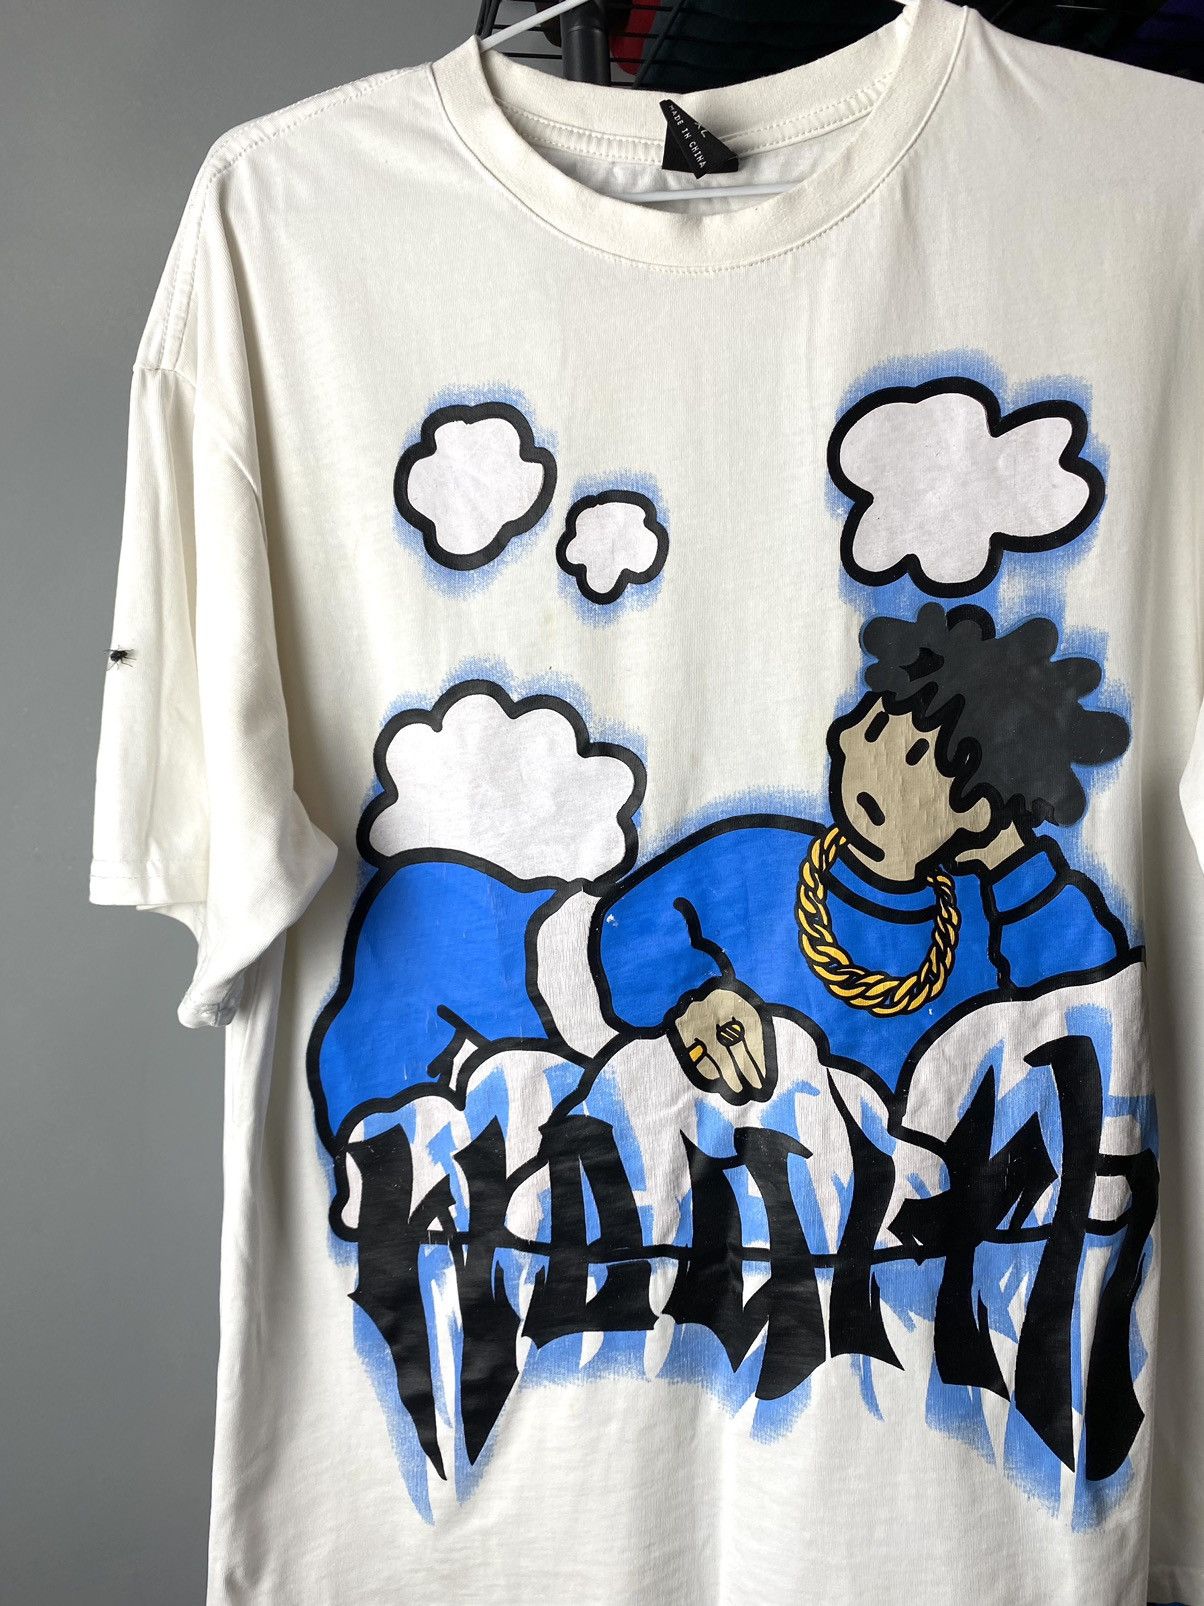 Vintage 00's Vintage Rap T Shirt Hip Hop Graffiti Graphic Art | Grailed